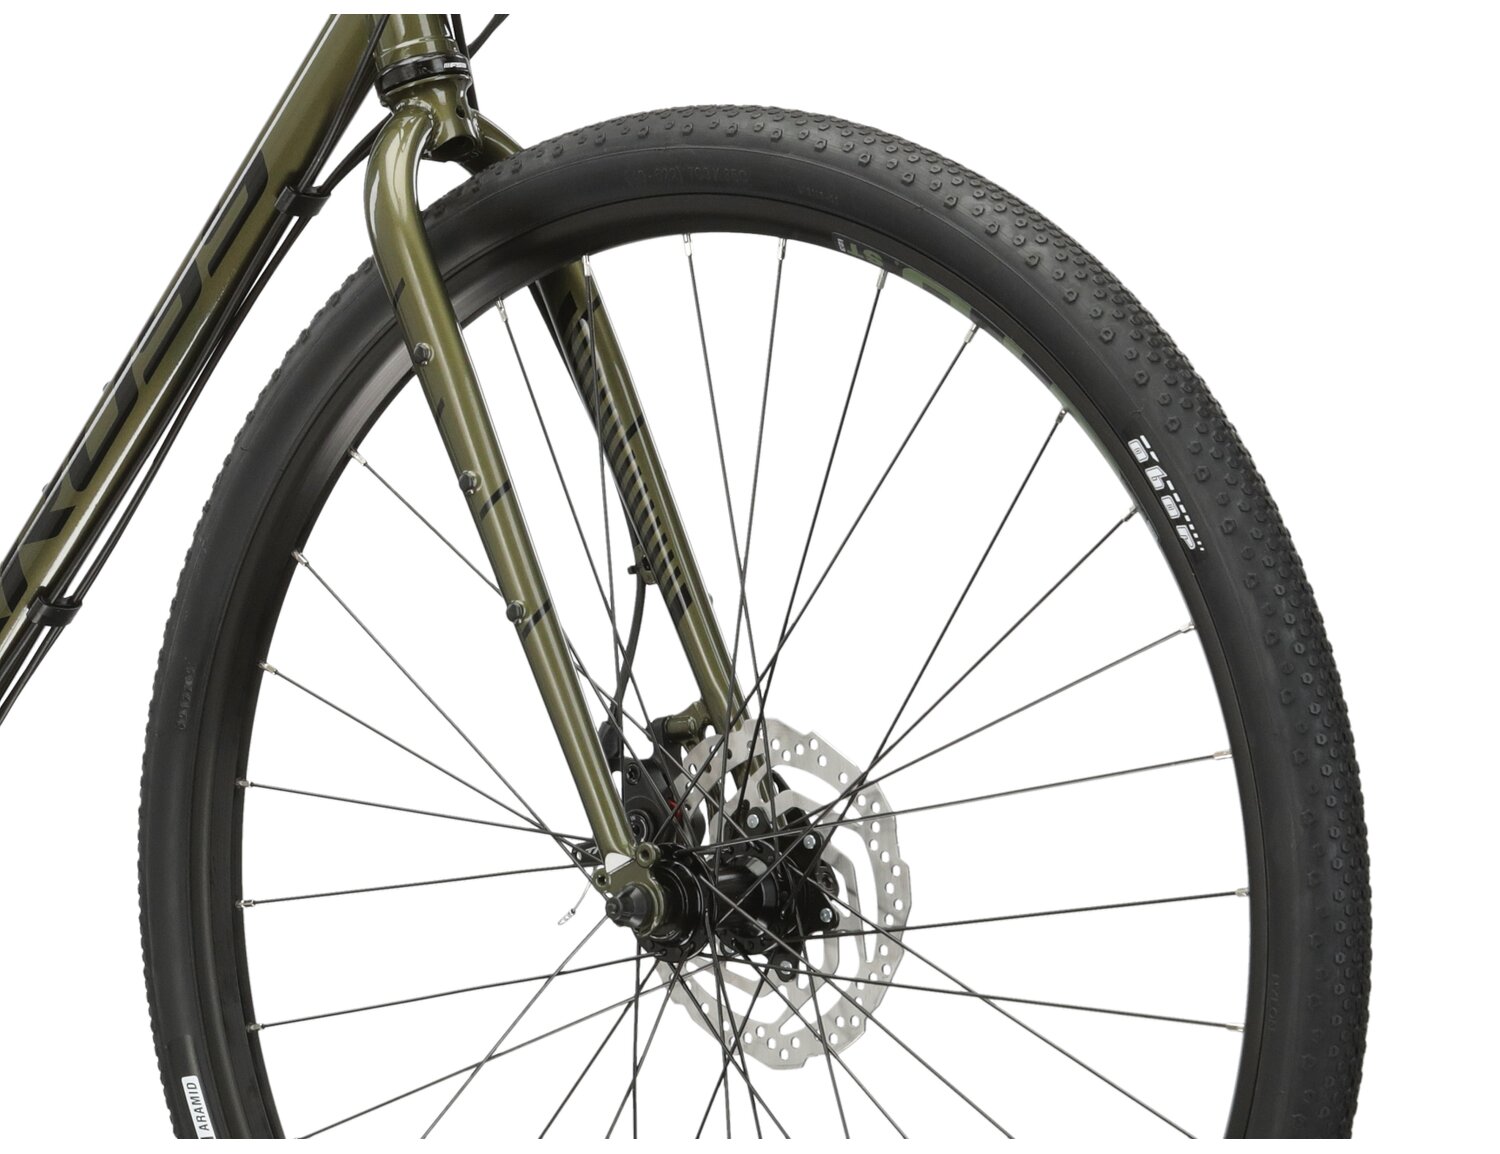  Stalowa rama, sztywny stalowy widelec oraz opony Wanda w rowerze gravelowym KROSS Esker 4.0 KRX 